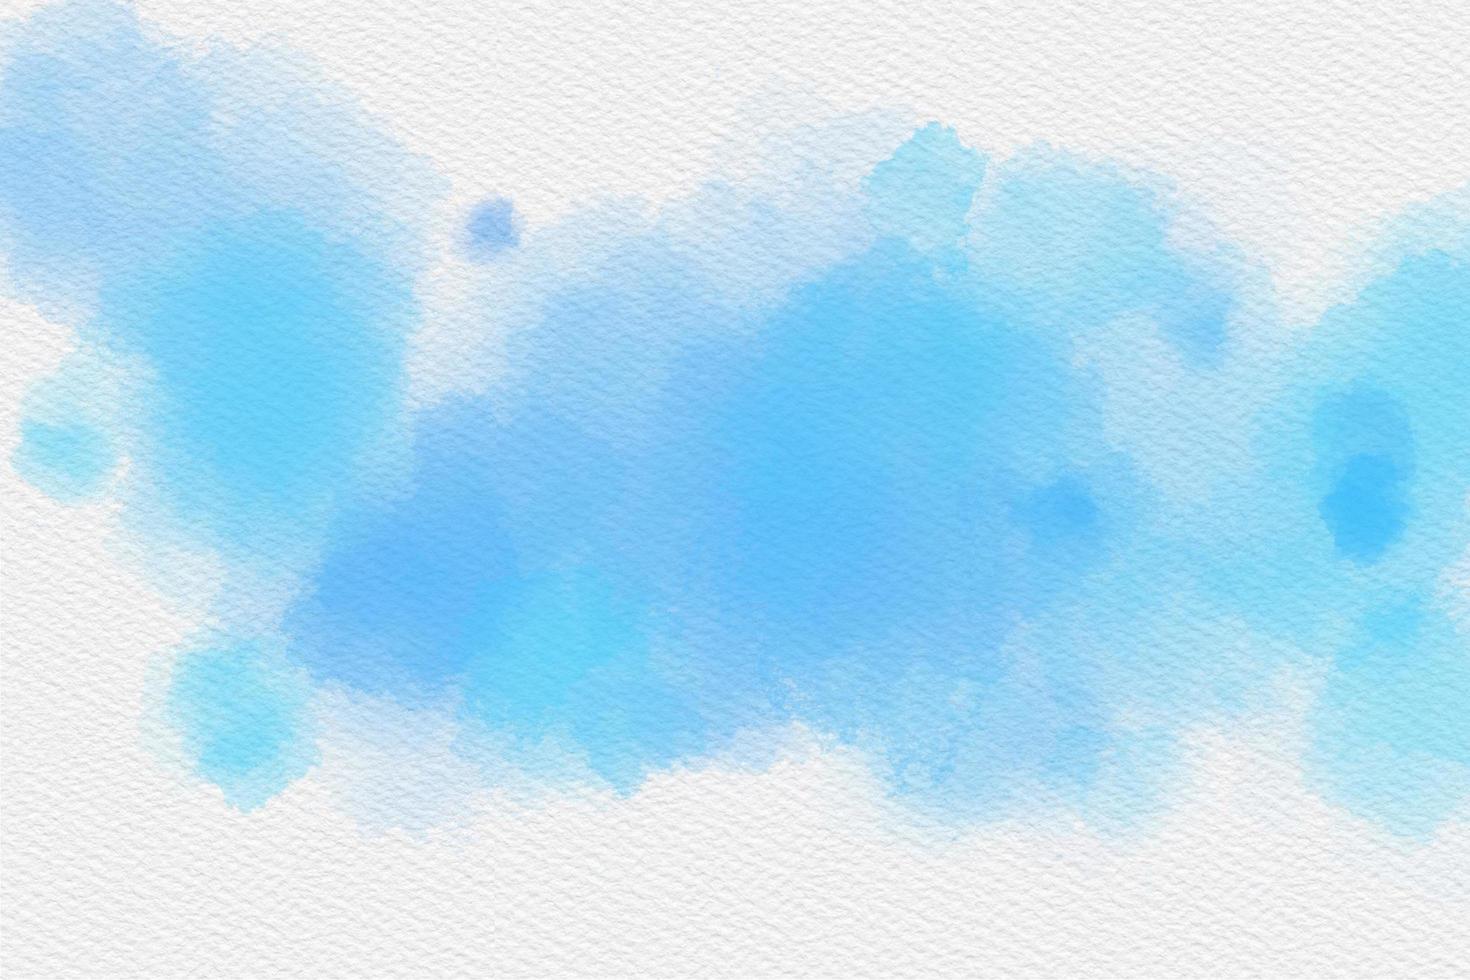 índigo azul aguarela mão pintura e respingo abstrato textura em branco papel fundo. foto